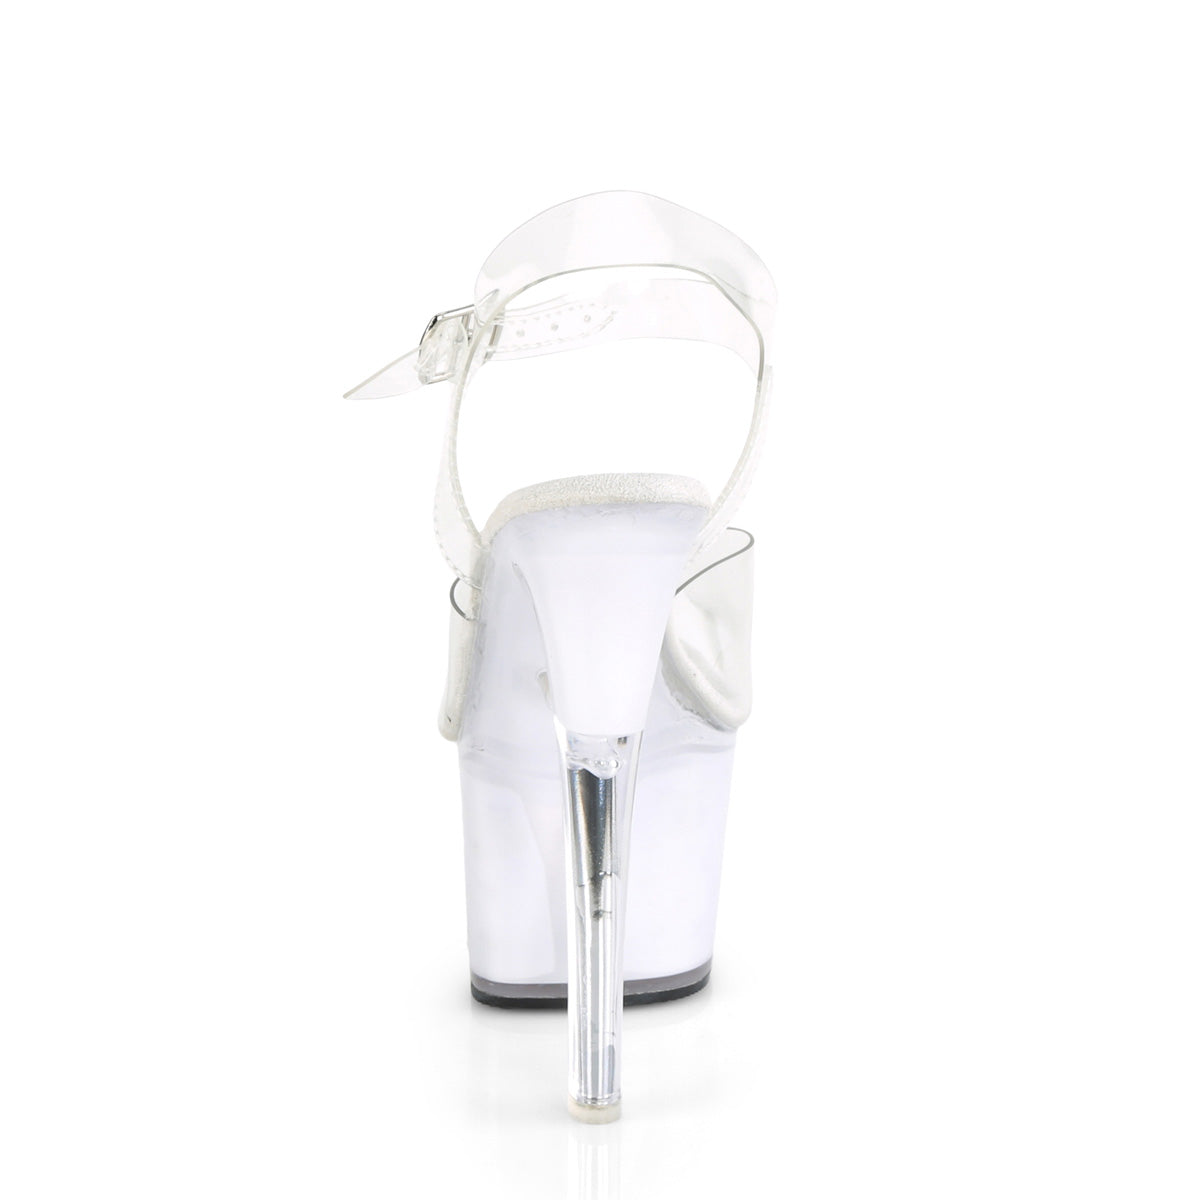 ECHOLITE-708 Pleaser Clear/White Glow Platform Shoes [Exotic Dance Shoes]